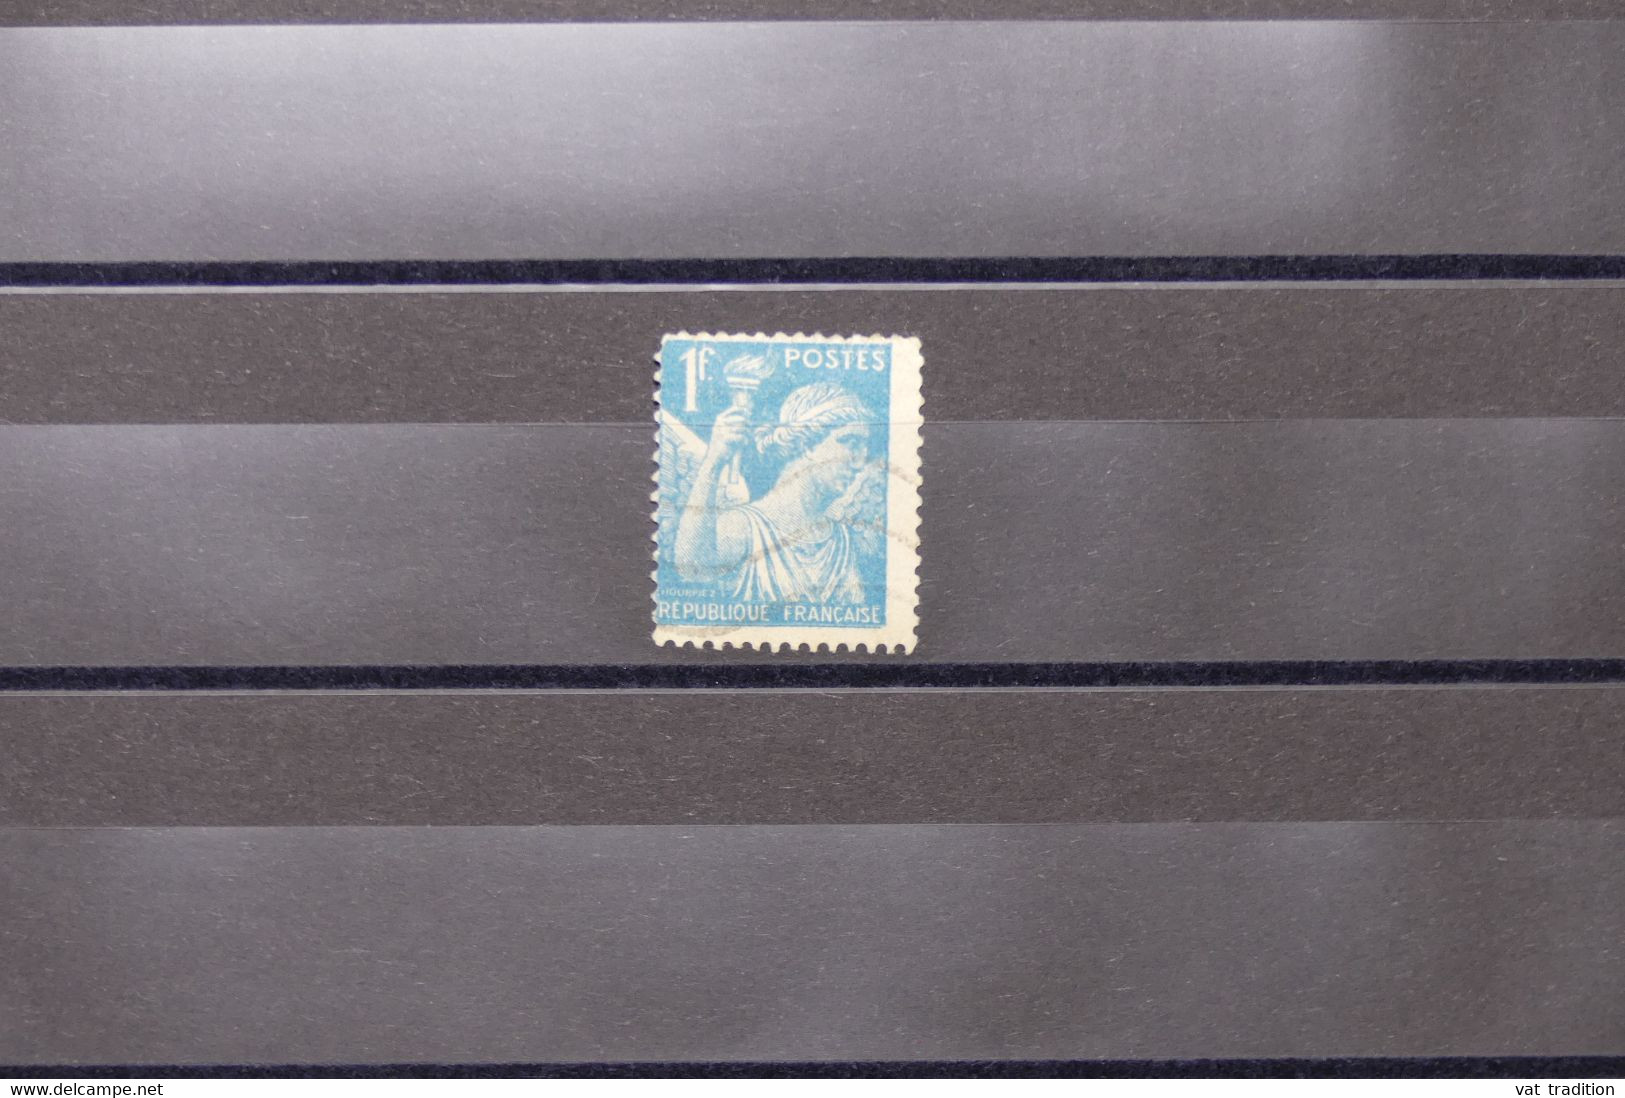 FRANCE - Variété - N° Yvert 650 - Type Iris - Papier Pelure - Oblitéré - L 74054 - Used Stamps